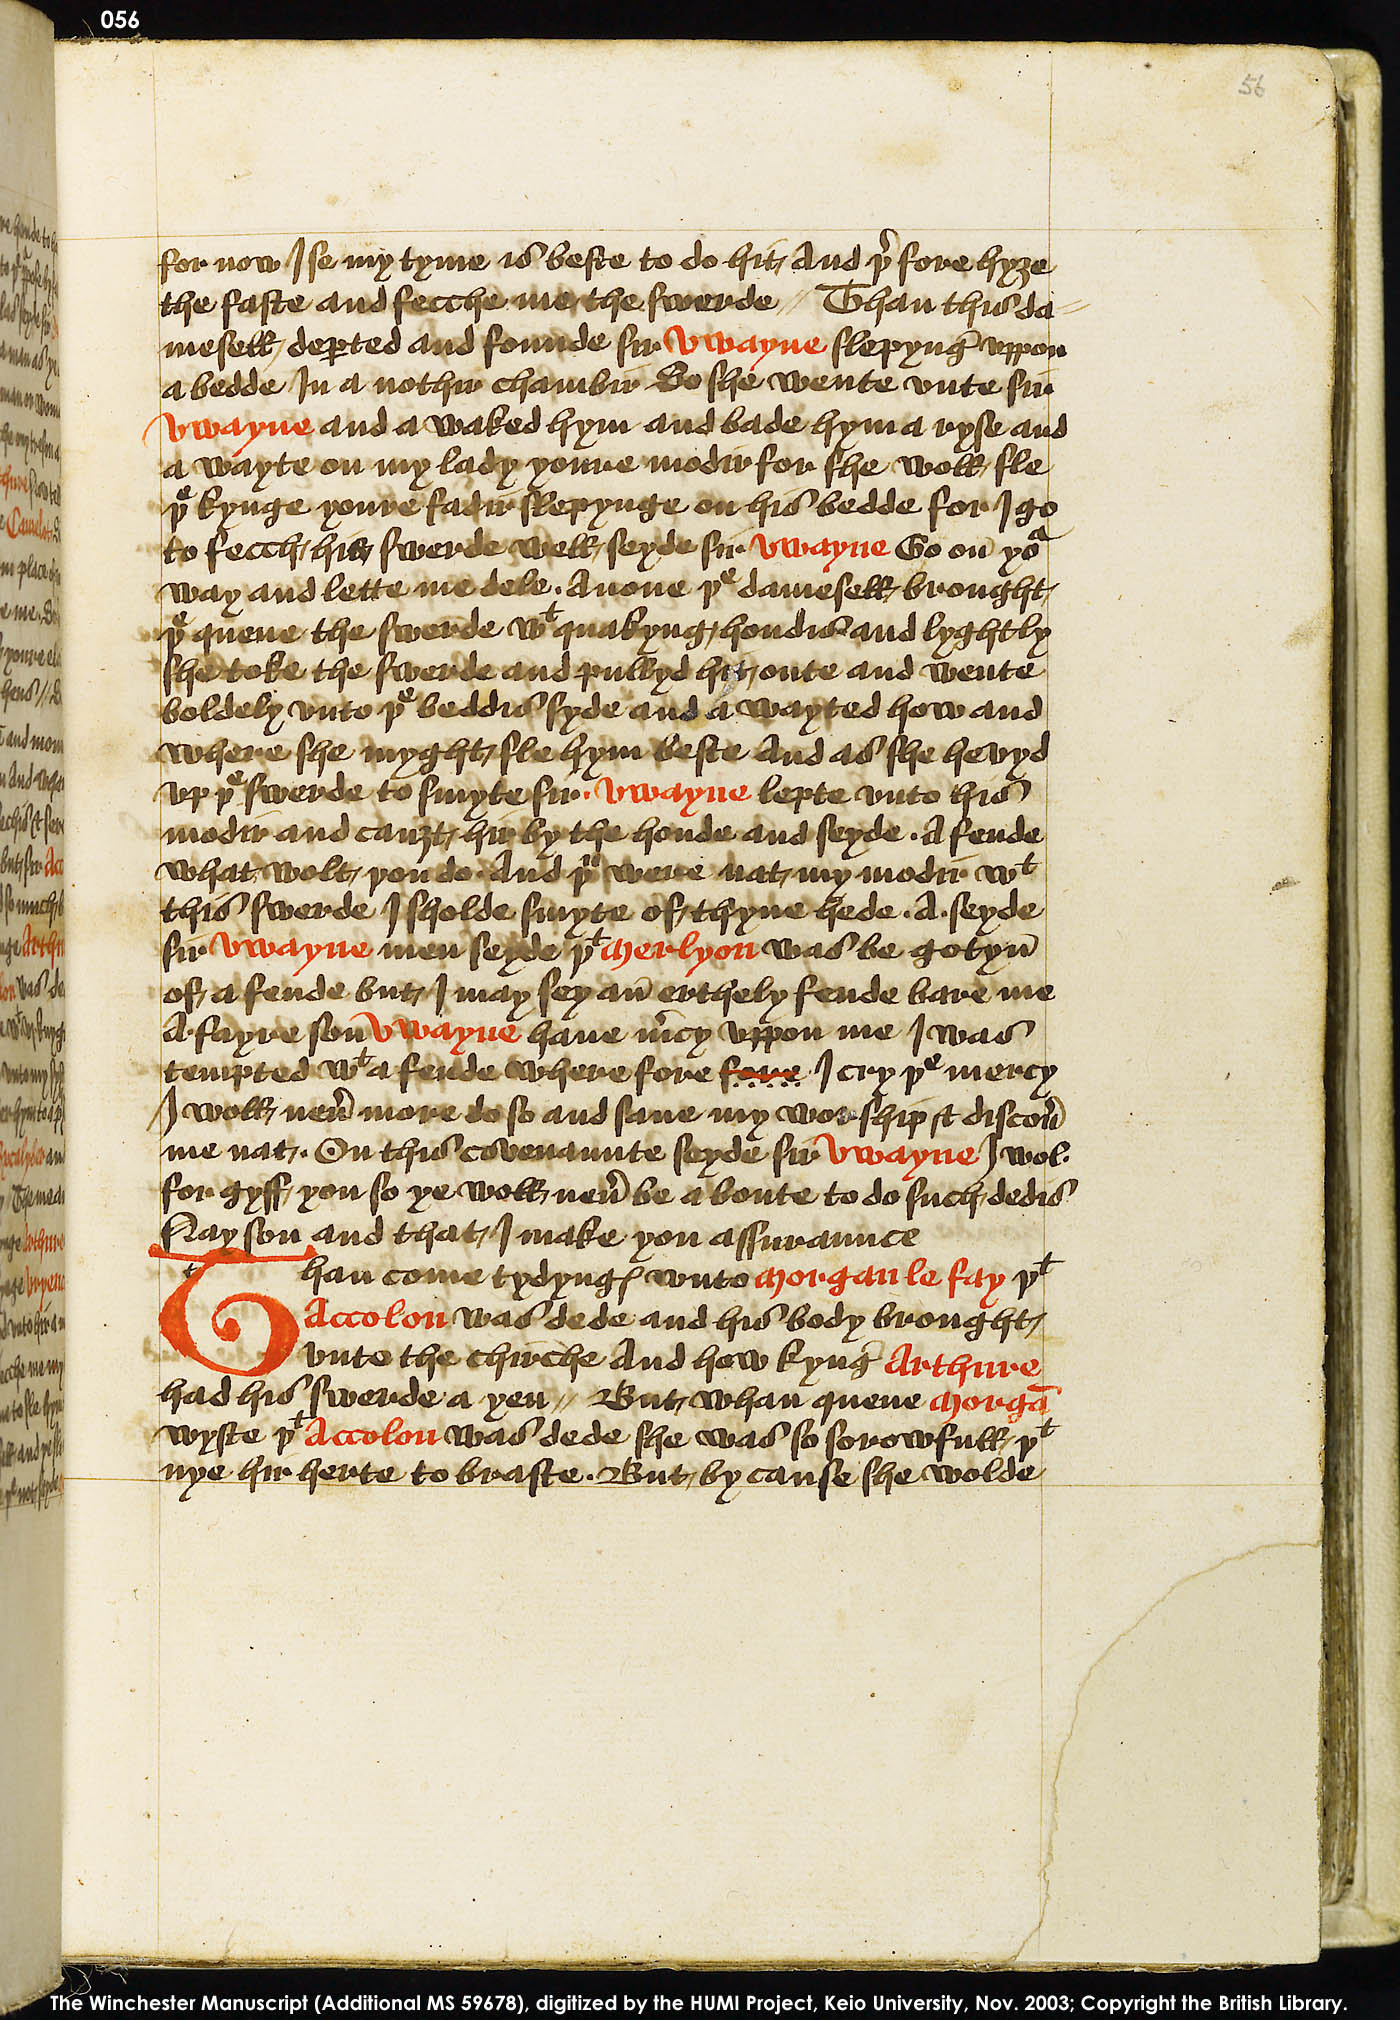 Folio 56r